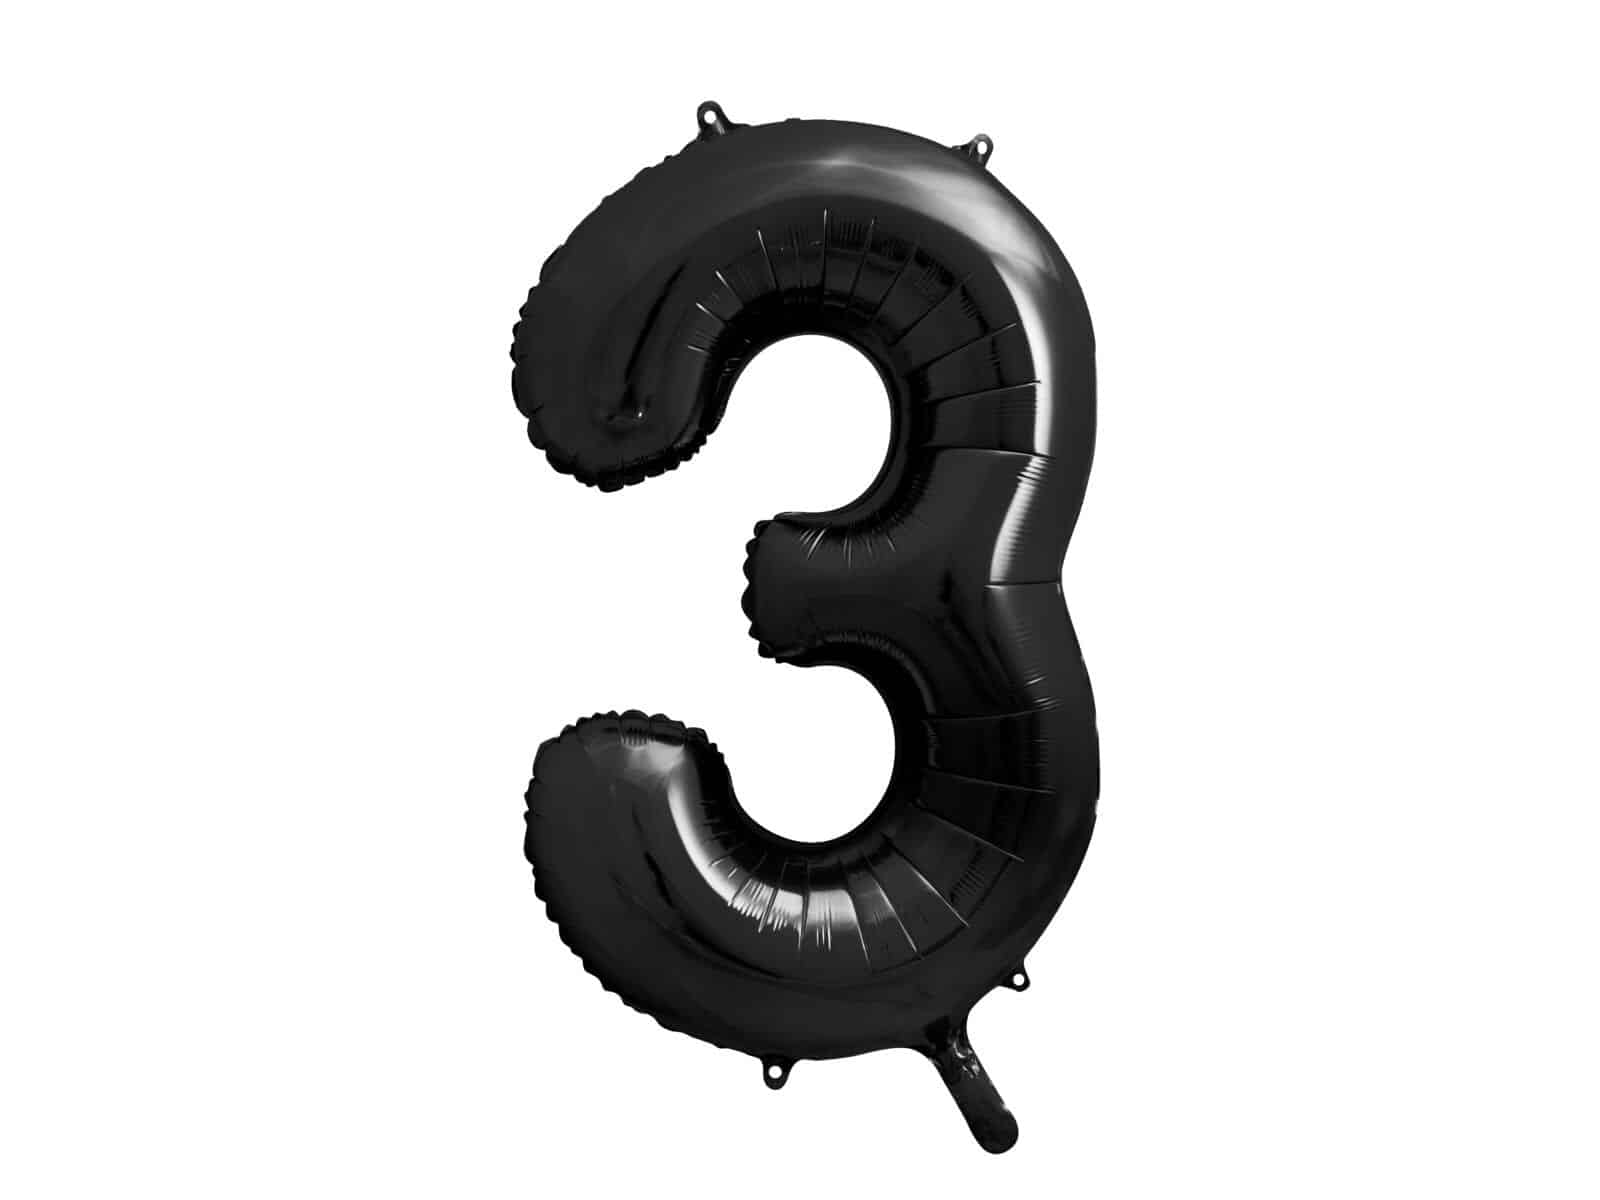 Balon bez helu: Cyfra 3 – 86cm, czarna Balony cyfry - 86 cm Szalony.pl - Sklep imprezowy